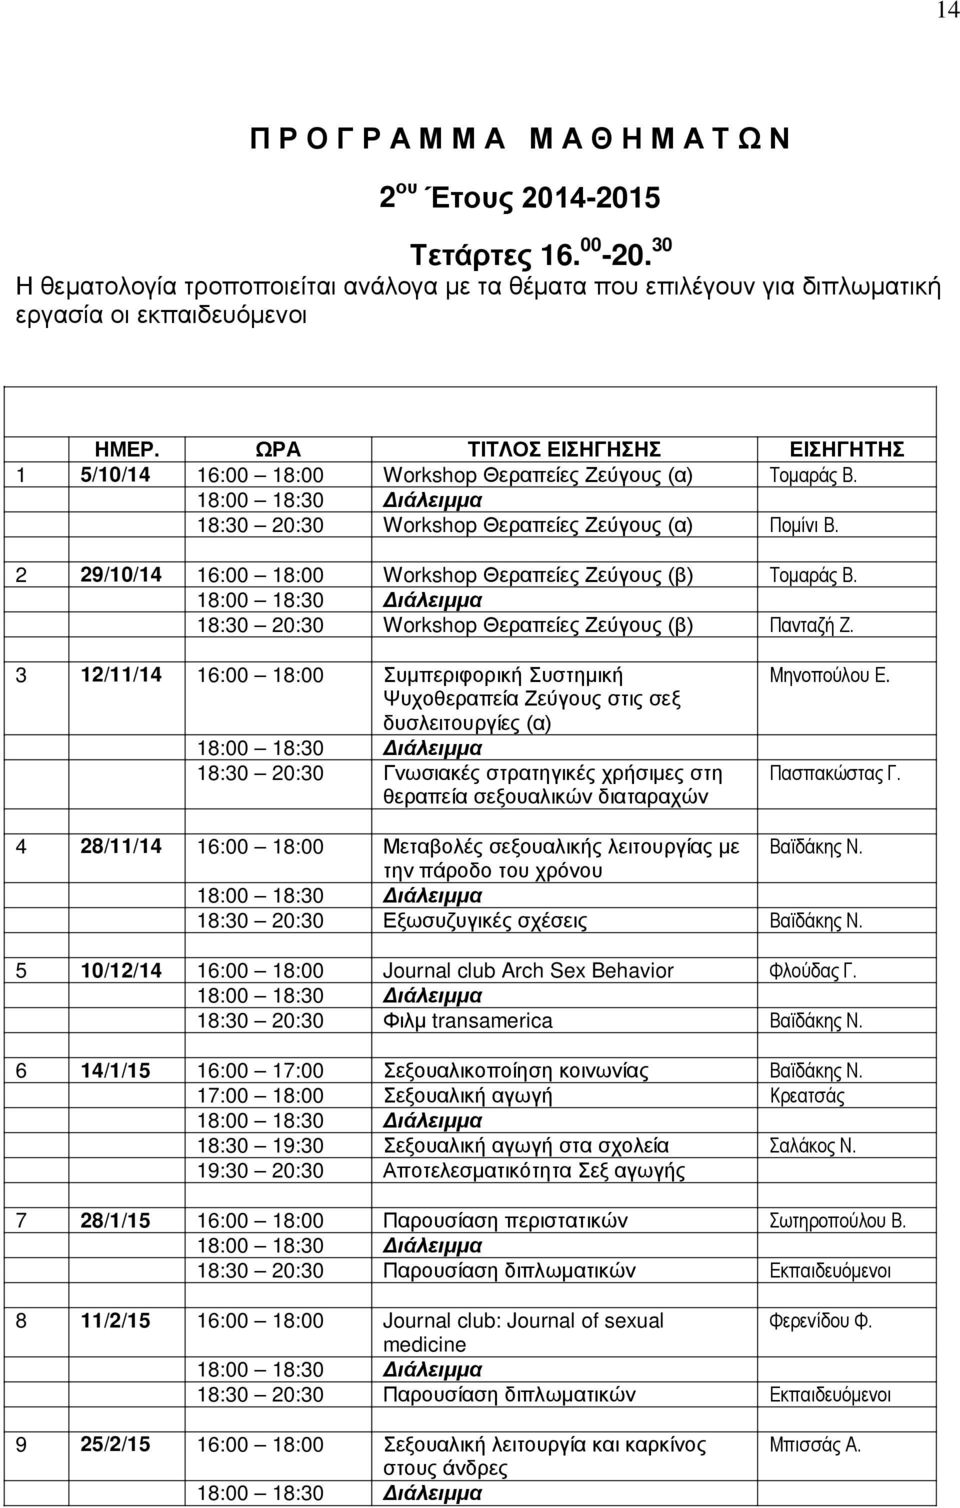 2 29/10/14 16:00 18:00 Workshop Θεραπείες Ζεύγους (β) Τομαράς Β. 18:30 20:30 Workshop Θεραπείες Ζεύγους (β) Πανταζή Ζ.